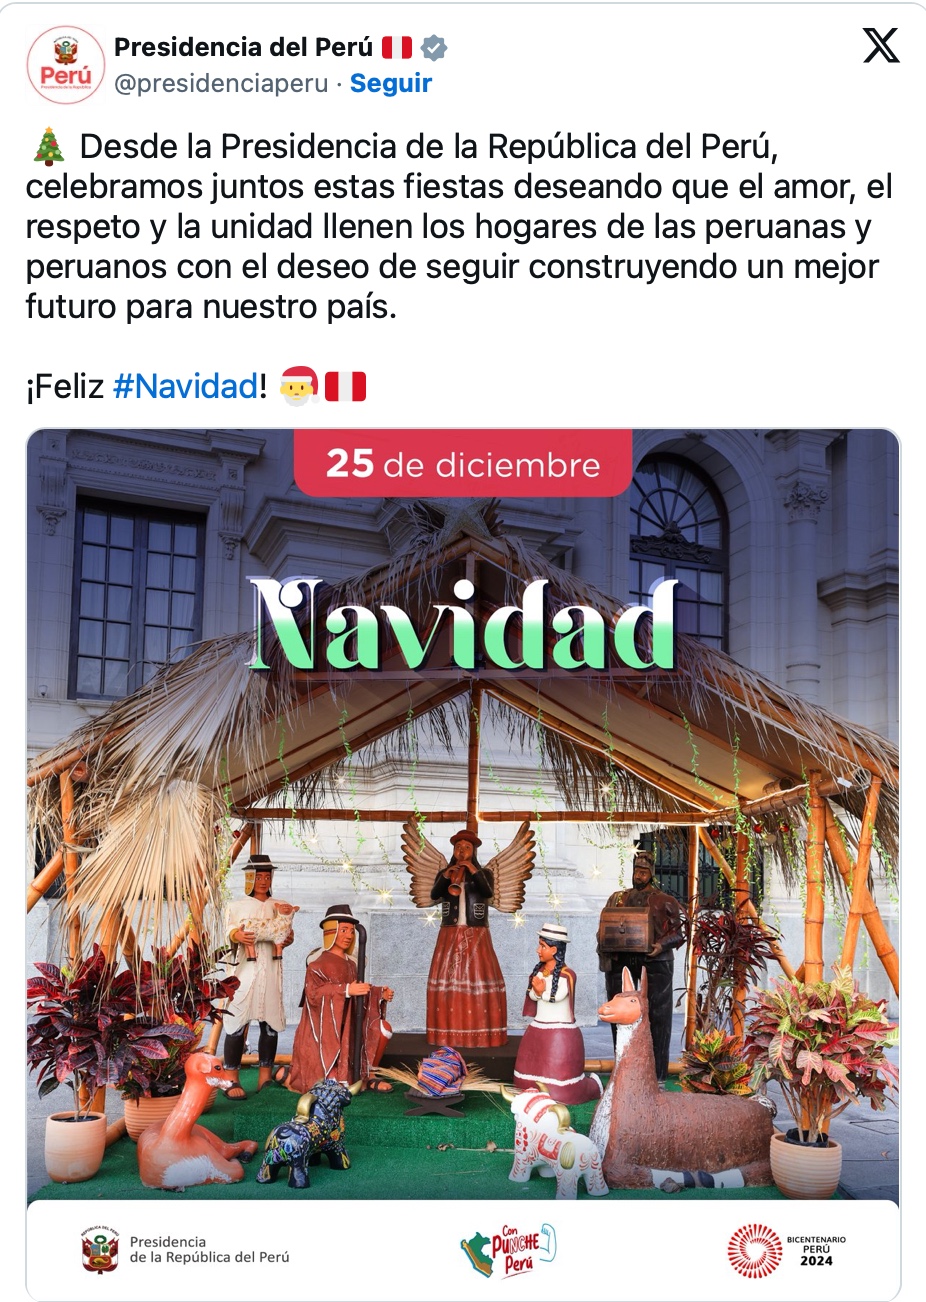 Presidencia por Navidad: "Que el amor, respeto y la unidad llenen los hogares de los peruanos"